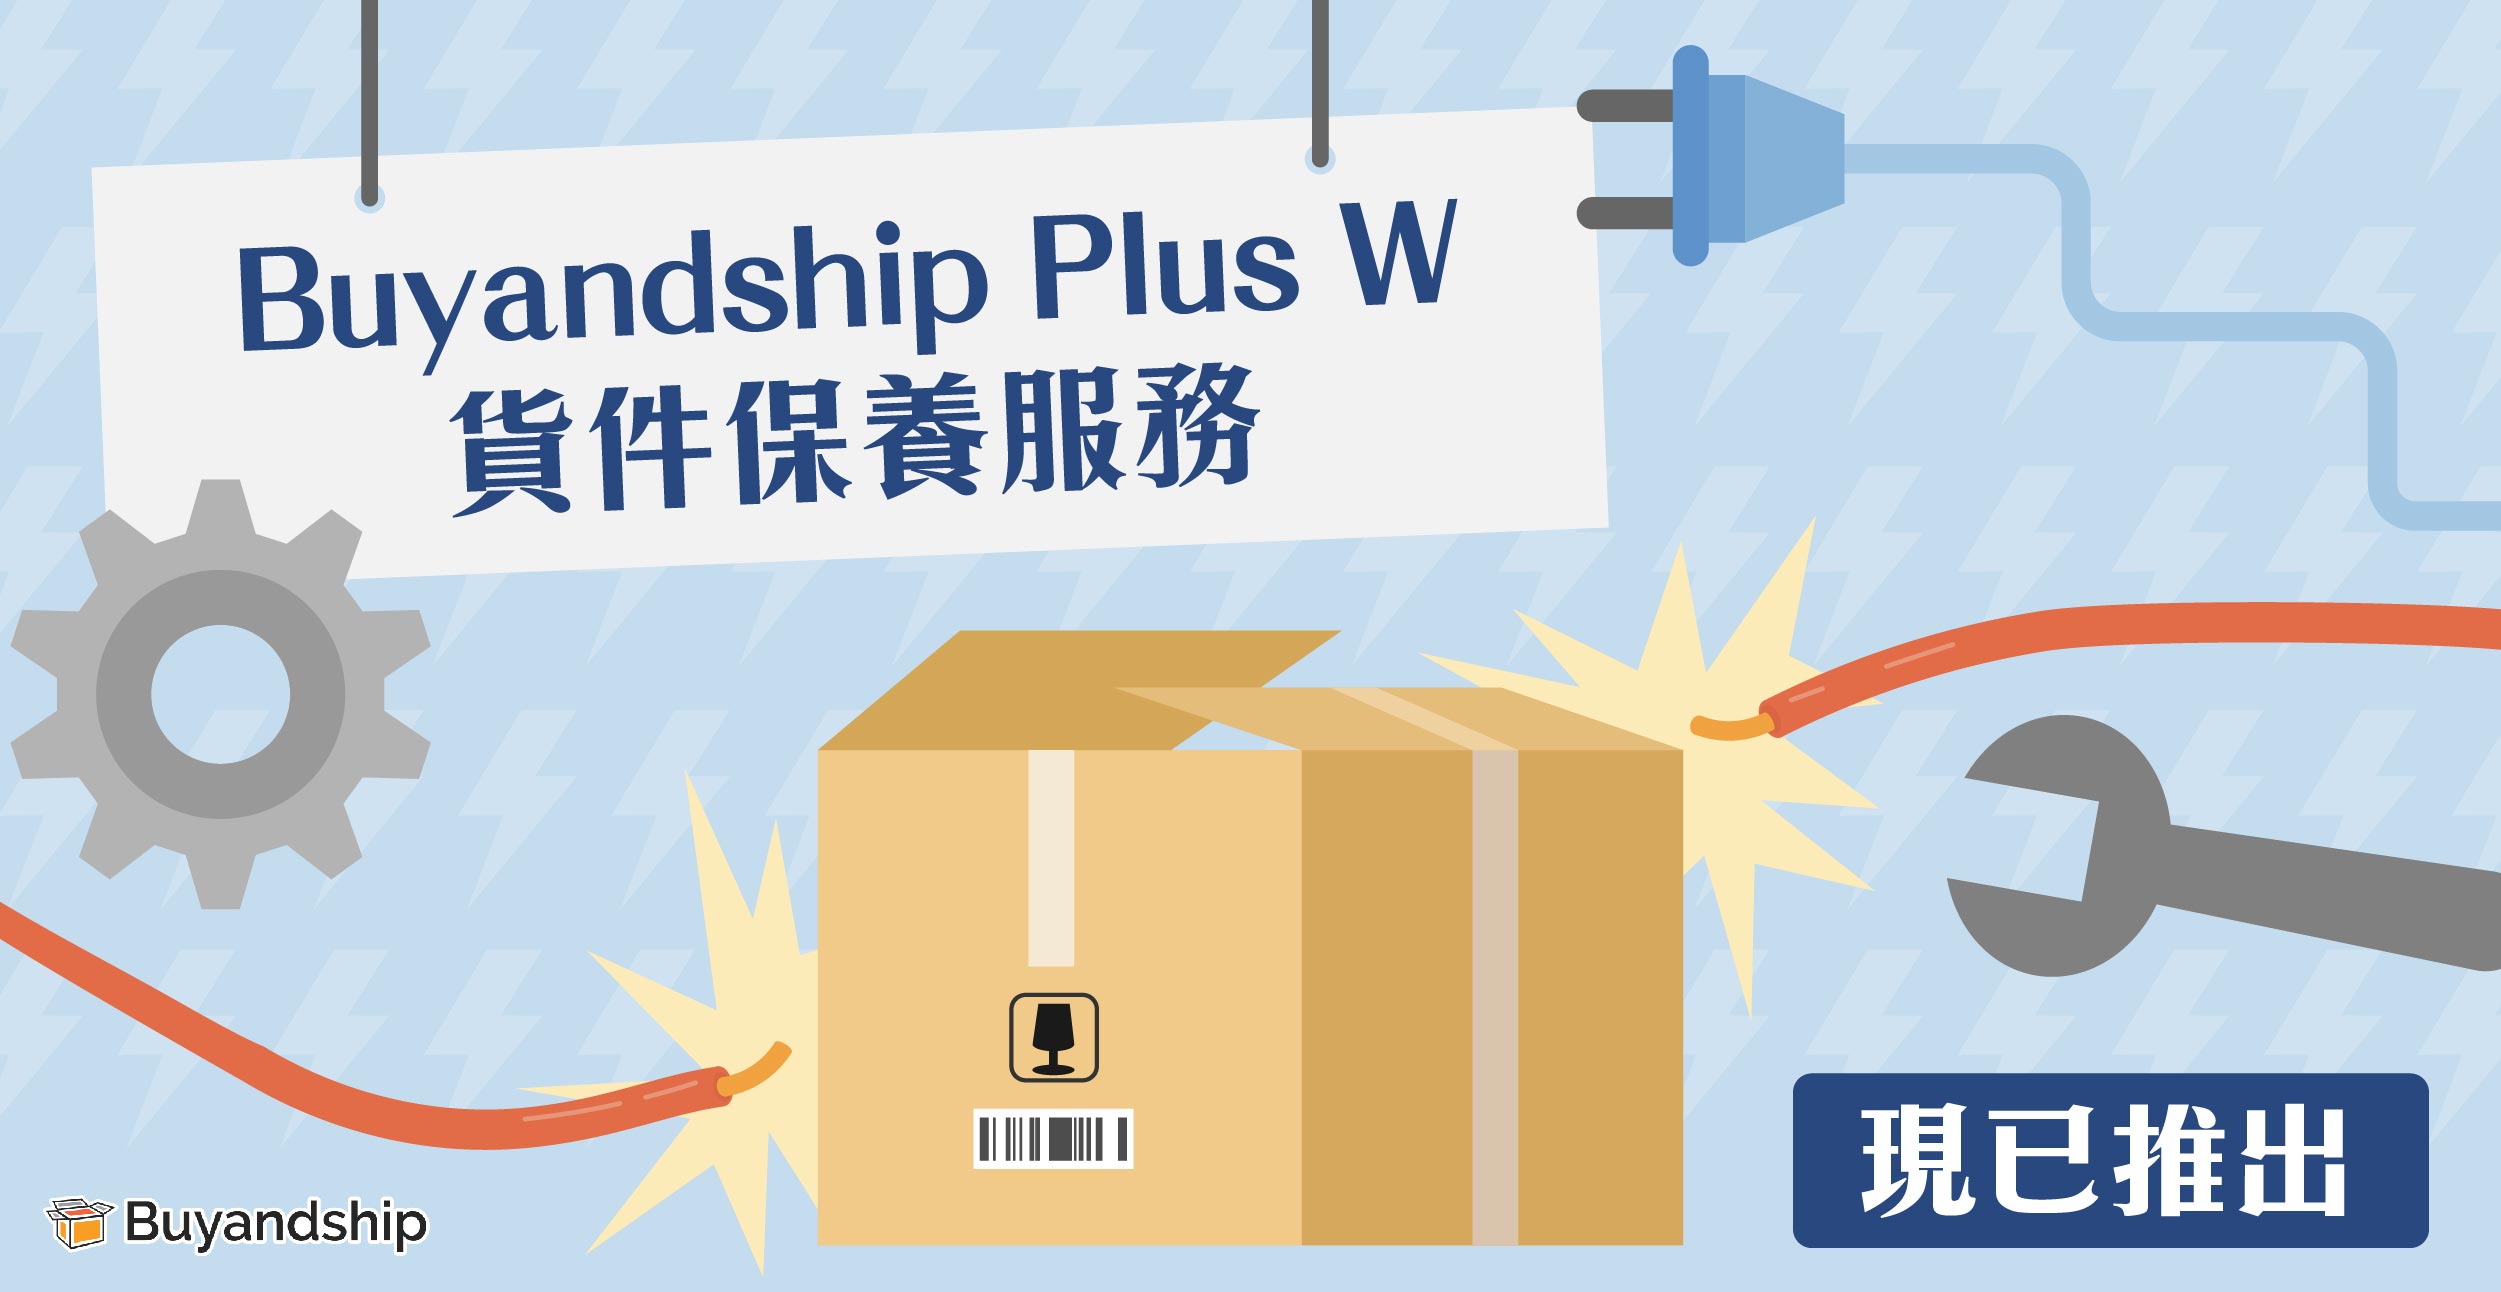 創新的轉運貨件保養服務「Buyandship Plus W」現已推出